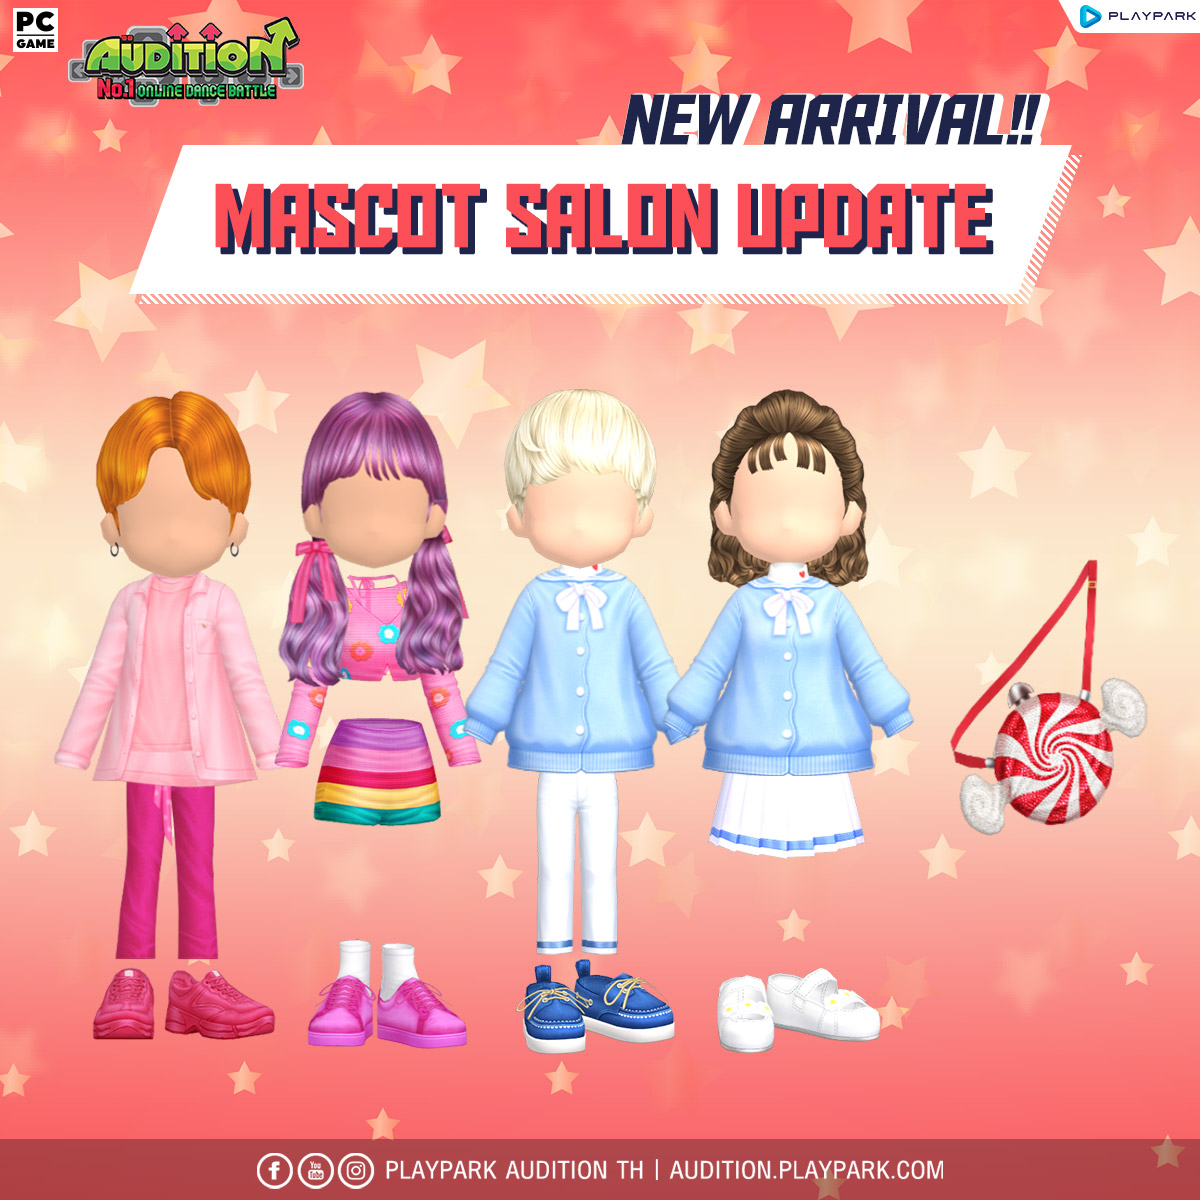 4 มกราคมนี้ Update เพลงใหม่, Mascot Salon, DJ Booth และไอเทมใหม่!!  